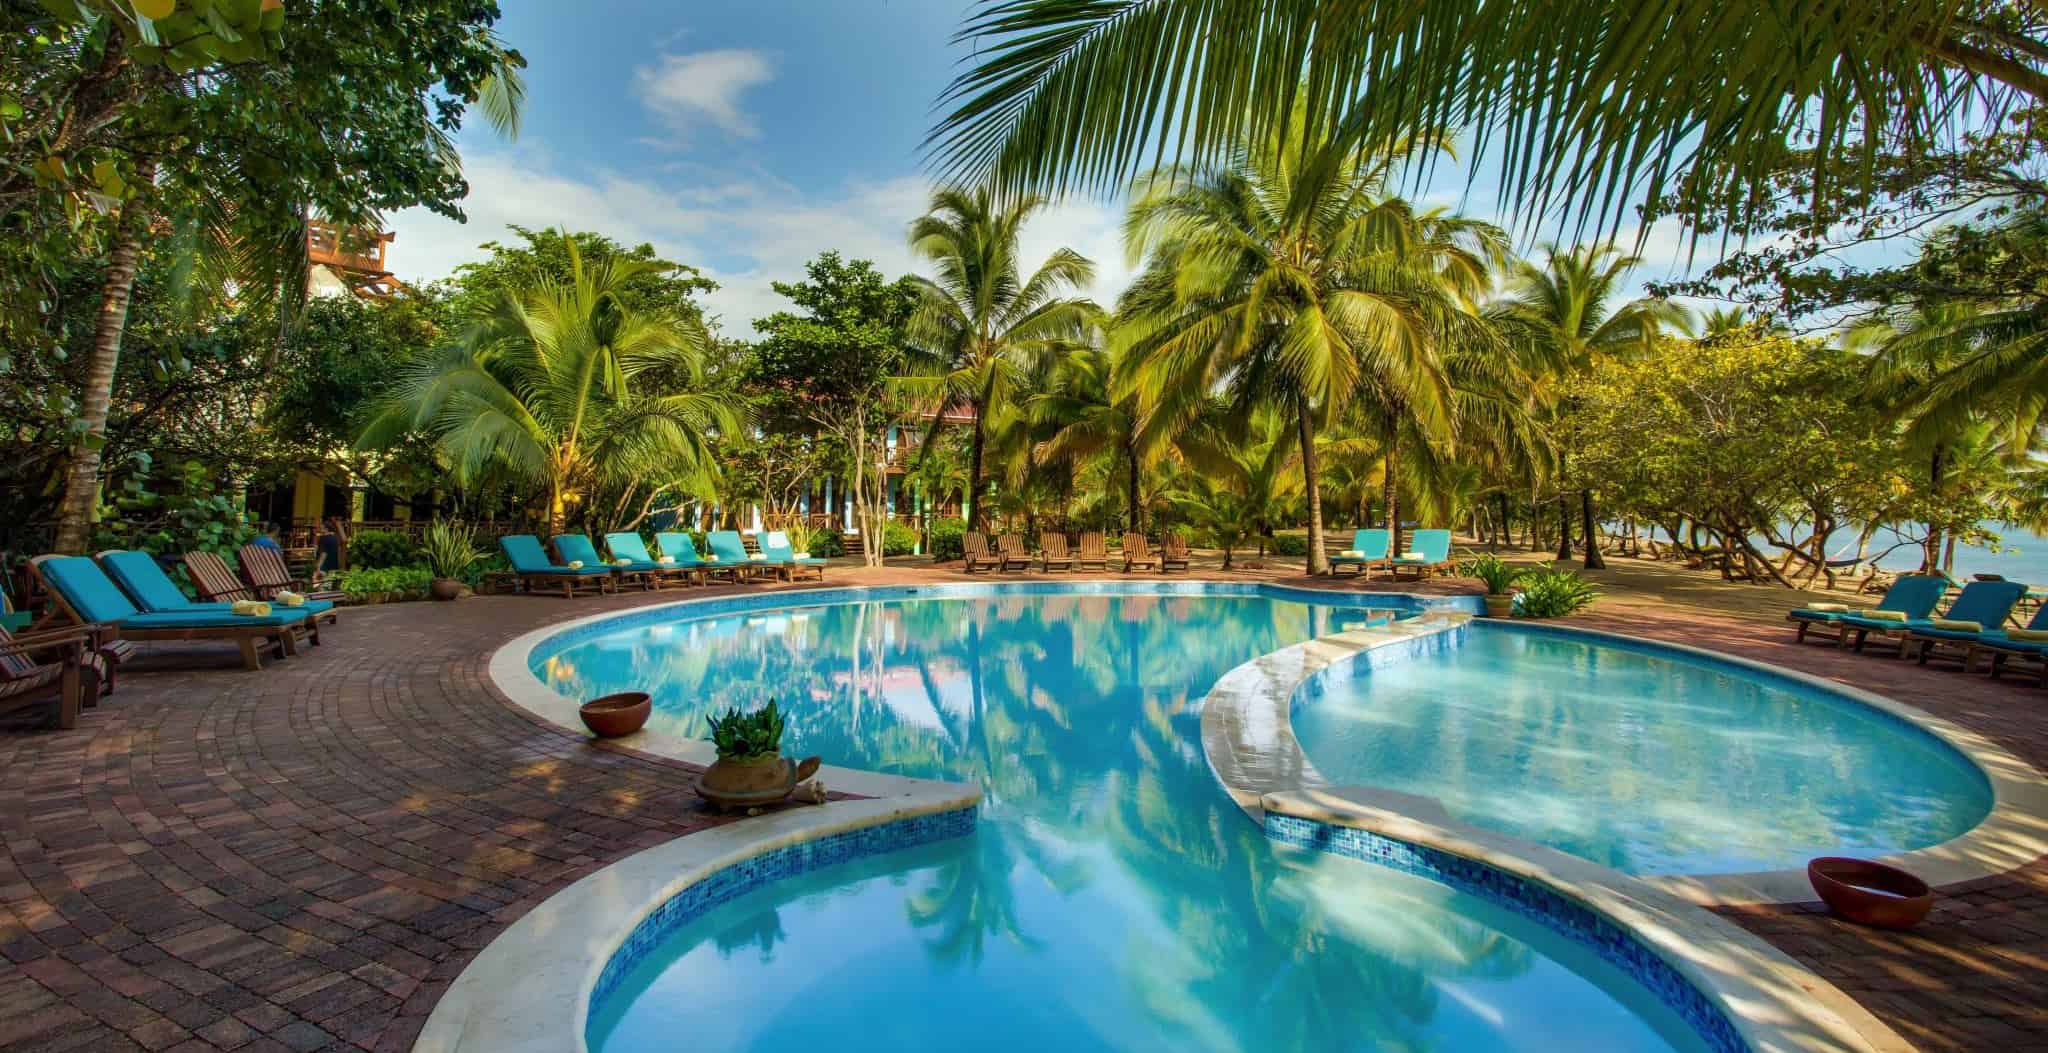 Belize Resort Pool View at Hamanasi